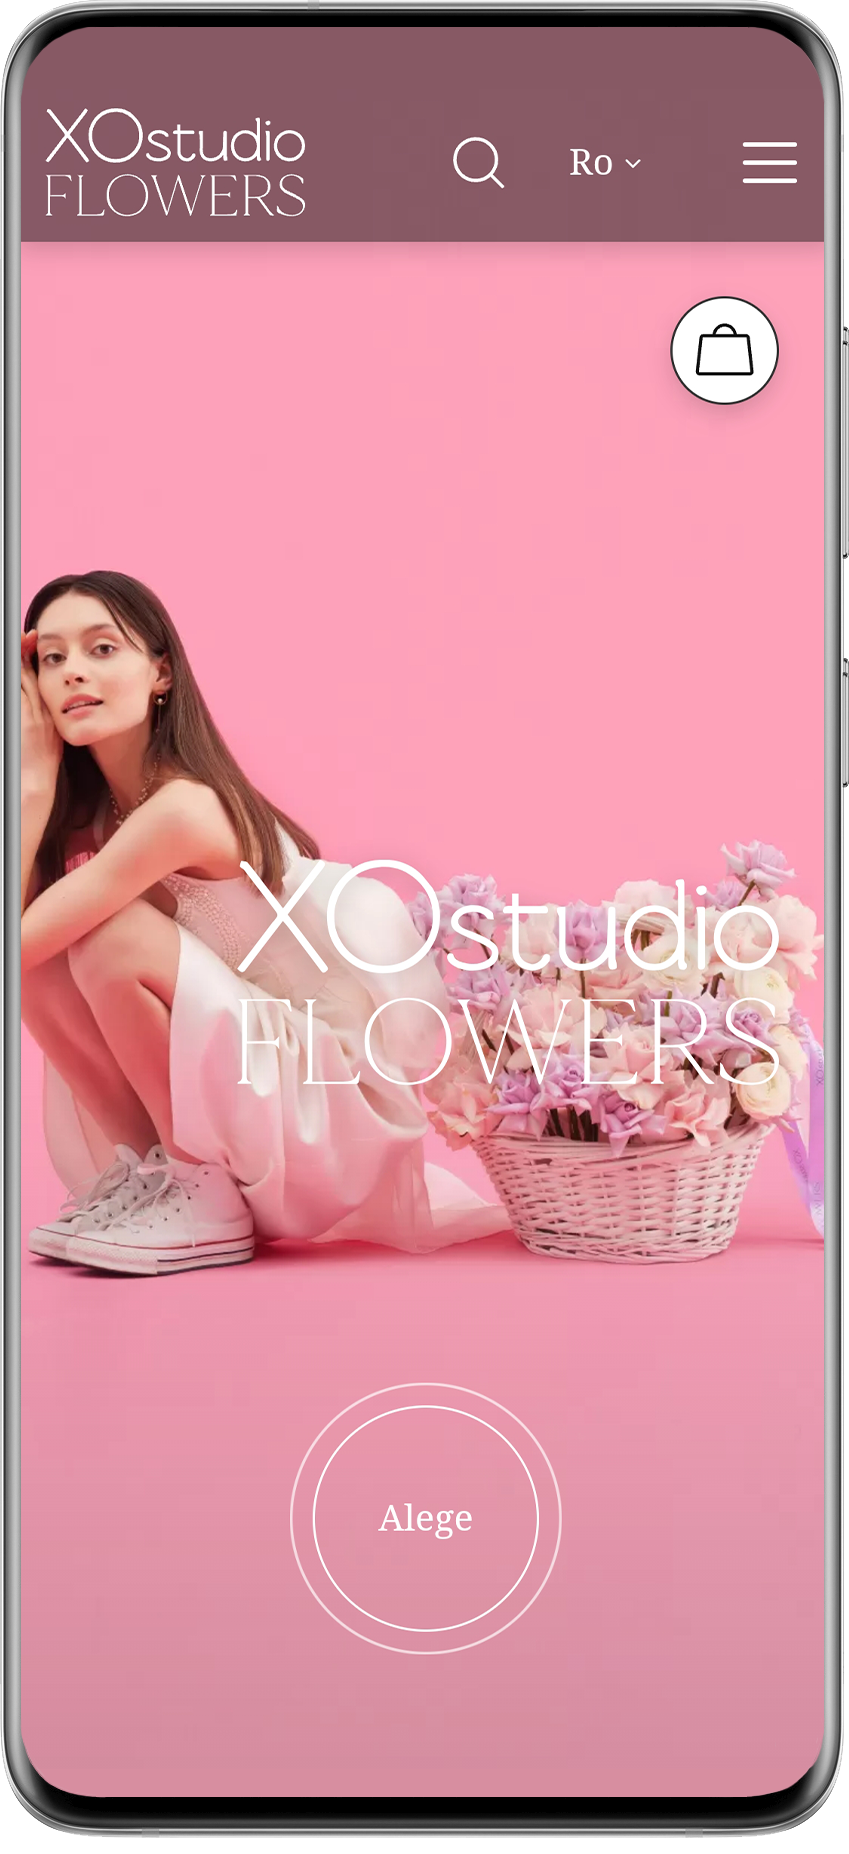 Создание сайта интернет-магазина XOstudio FLOWERS